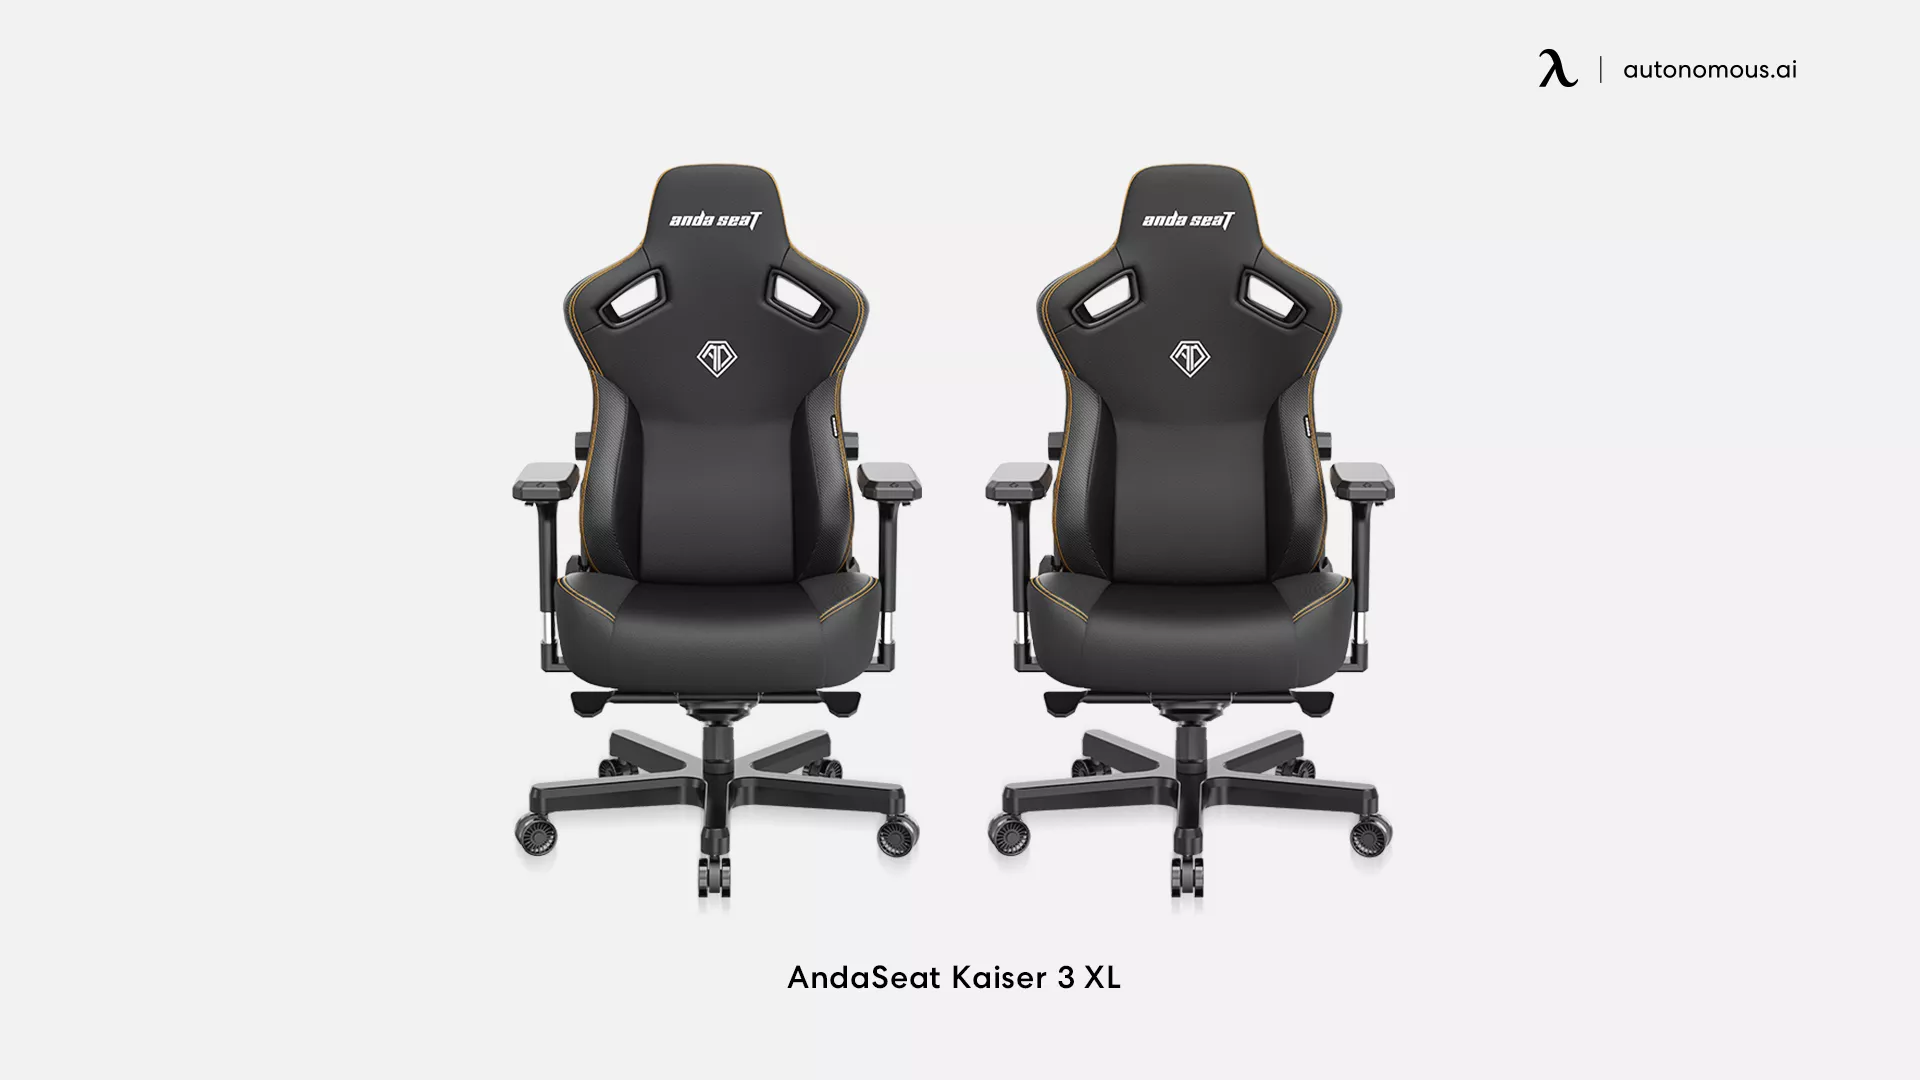 AndaSeat Kaiser 3 XL black gaming chair